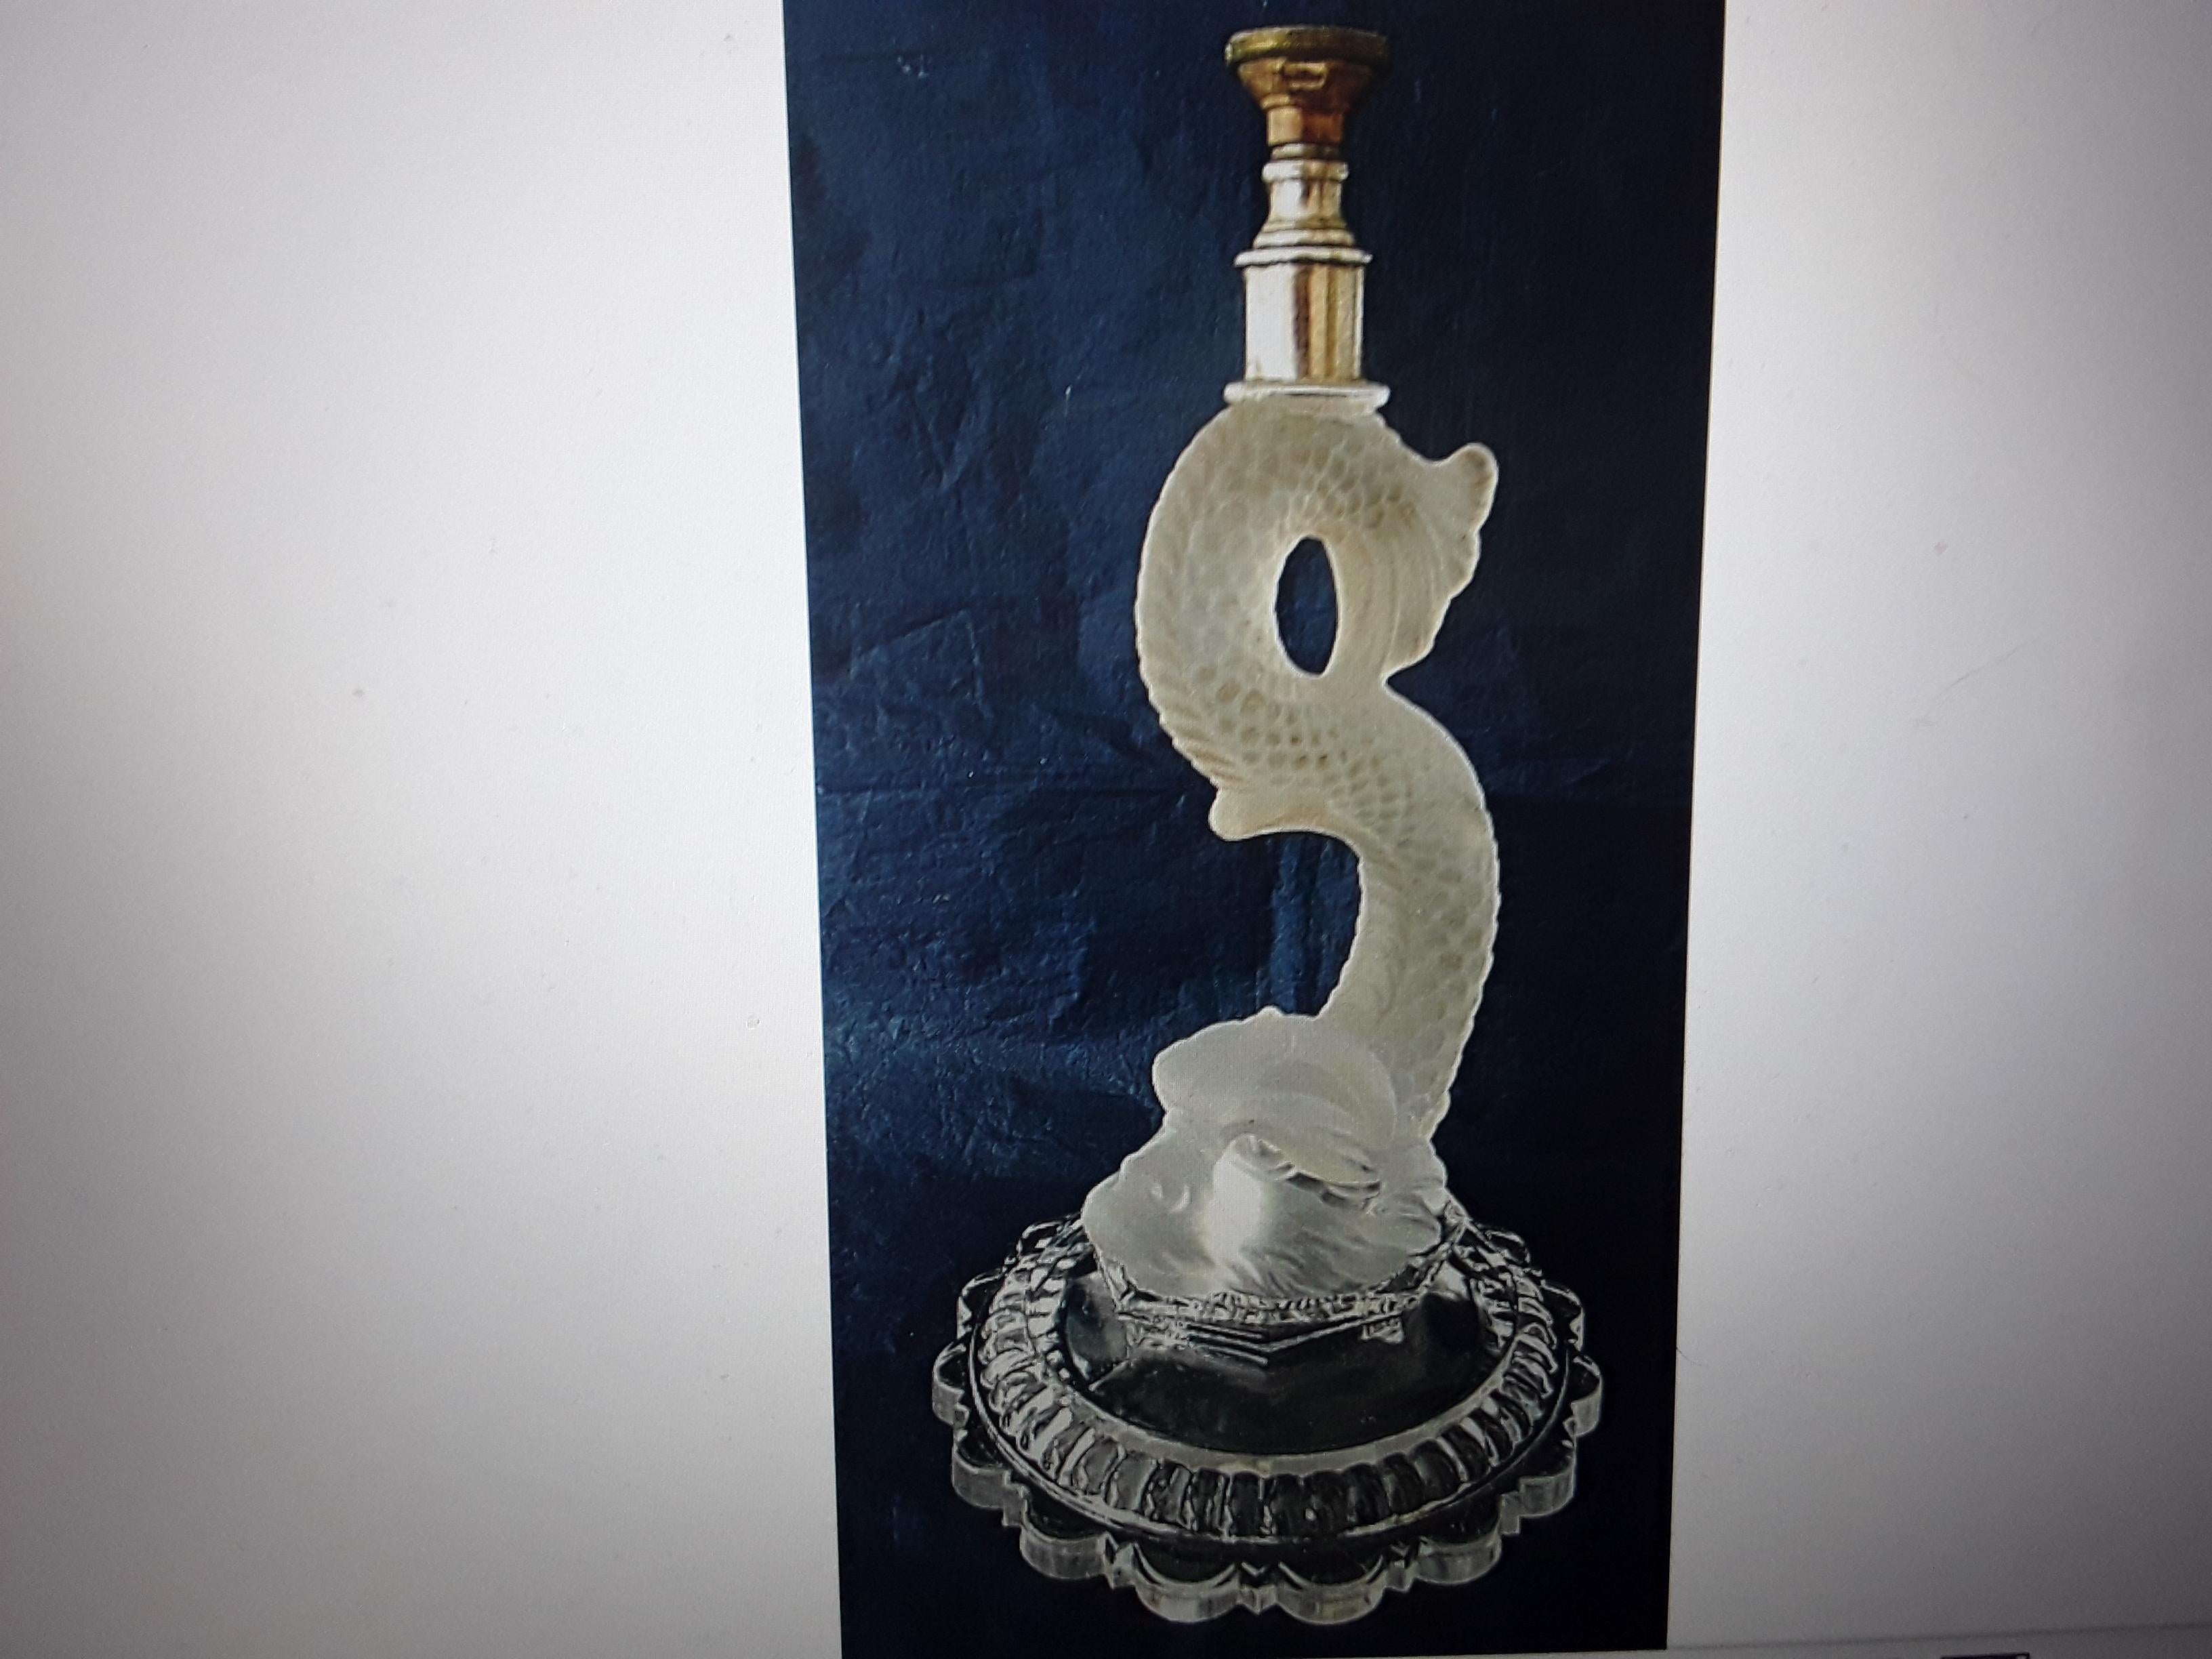 Magnifique lampe de table en cristal dépoli signée Baccarat, datant des années 1940. Créature marine figurative/ Koi/ Poisson dauphin en plein relief. Lampe étonnante et très détaillée.